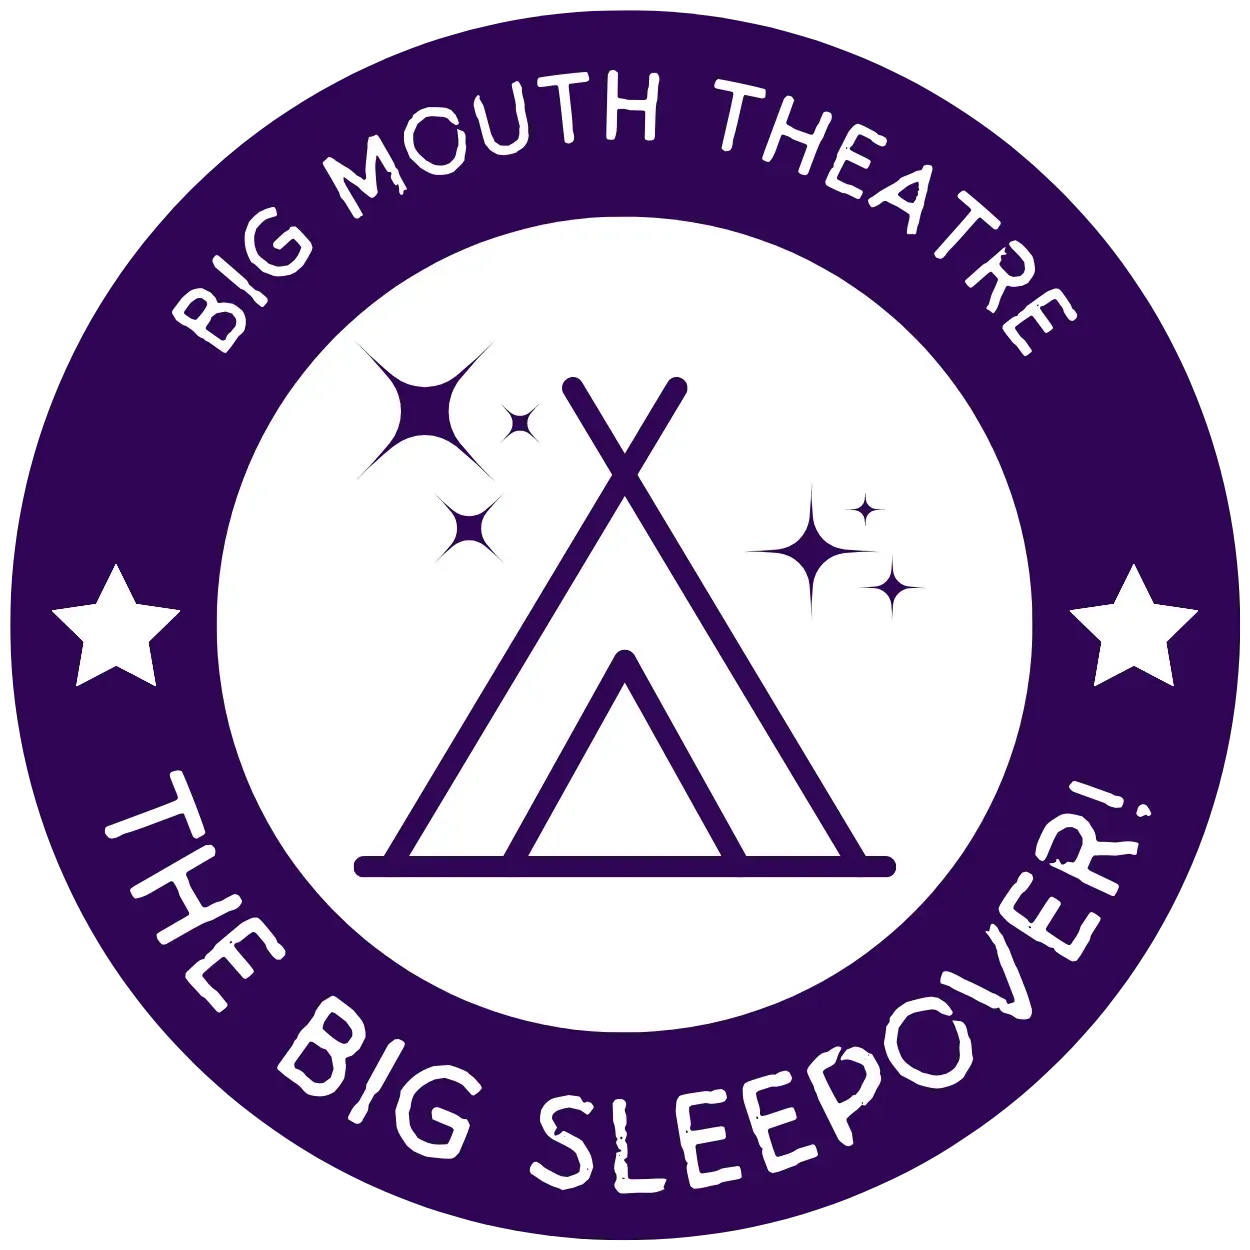 The BIG Sleepover logo